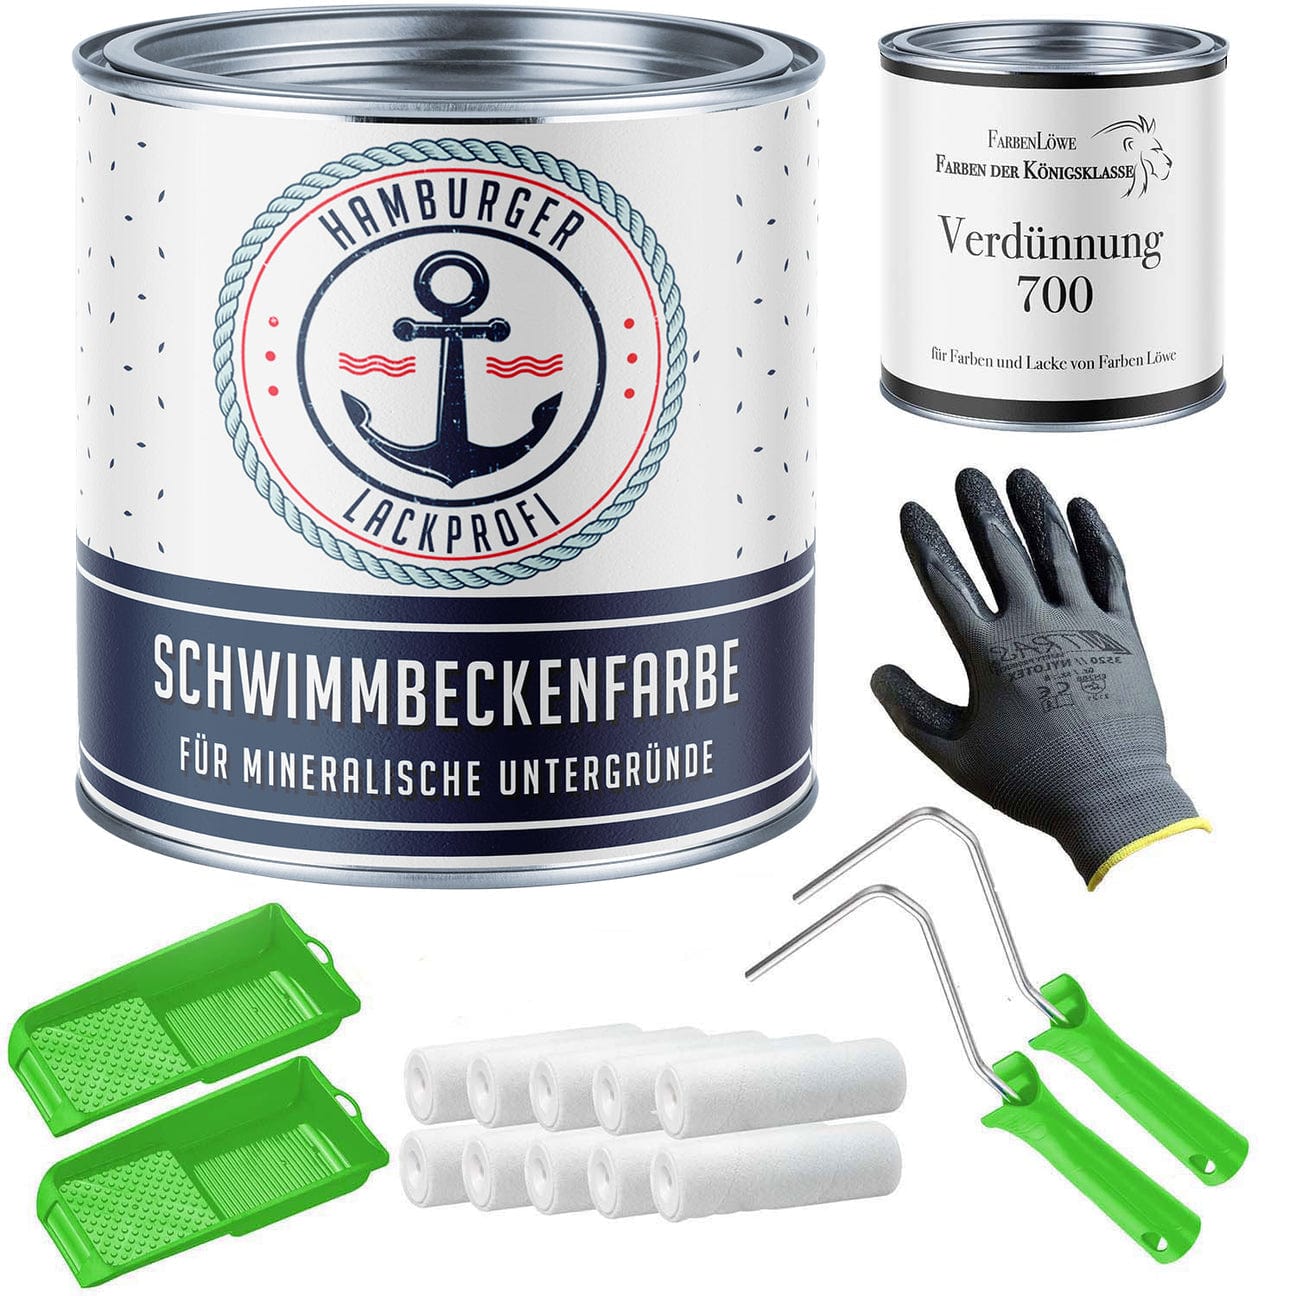 Hamburger Lack-Profi Lacke & Beschichtungen Hamburger Lack-Profi Schwimmbeckenfarbe Poolfarbe in Braungrau RAL 7013 mit Lackierset (X300) & Verdünnung (1 L) - 30% Sparangebot